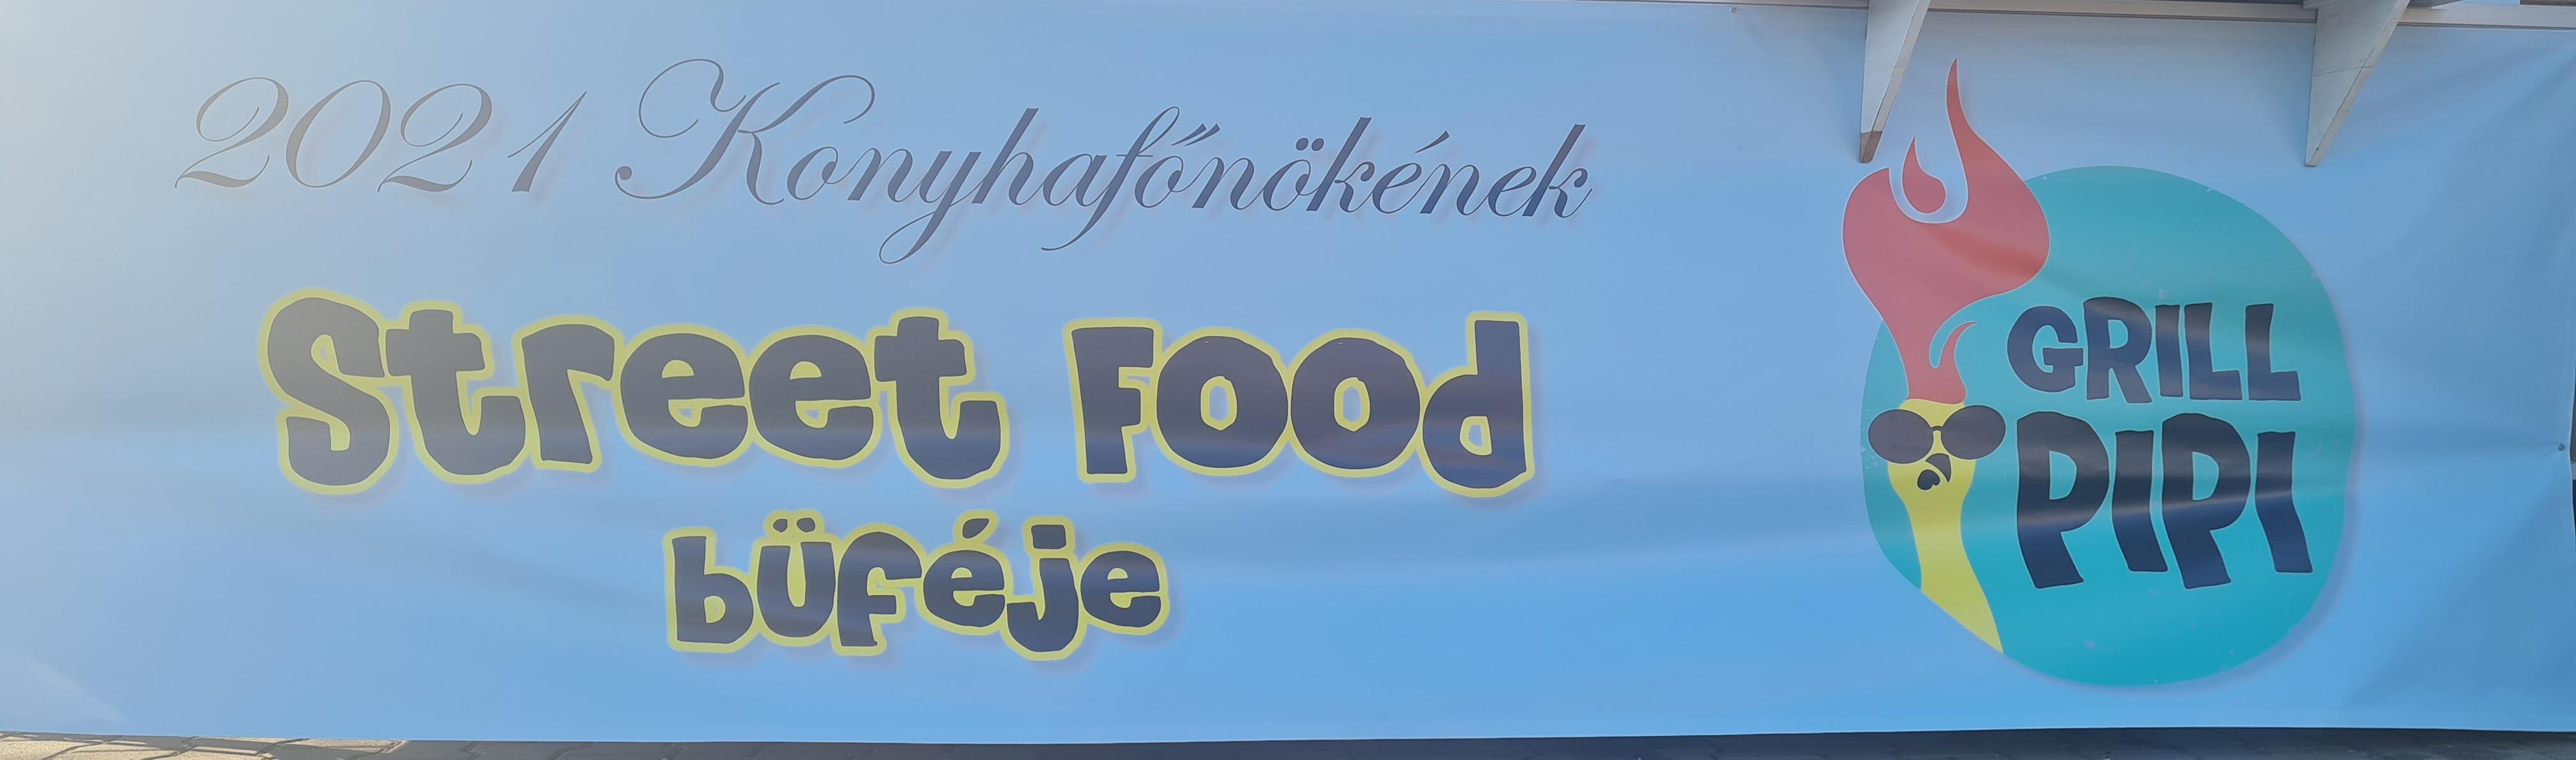 Grill Pipi Food Truck nyílt a Forum parkolóban